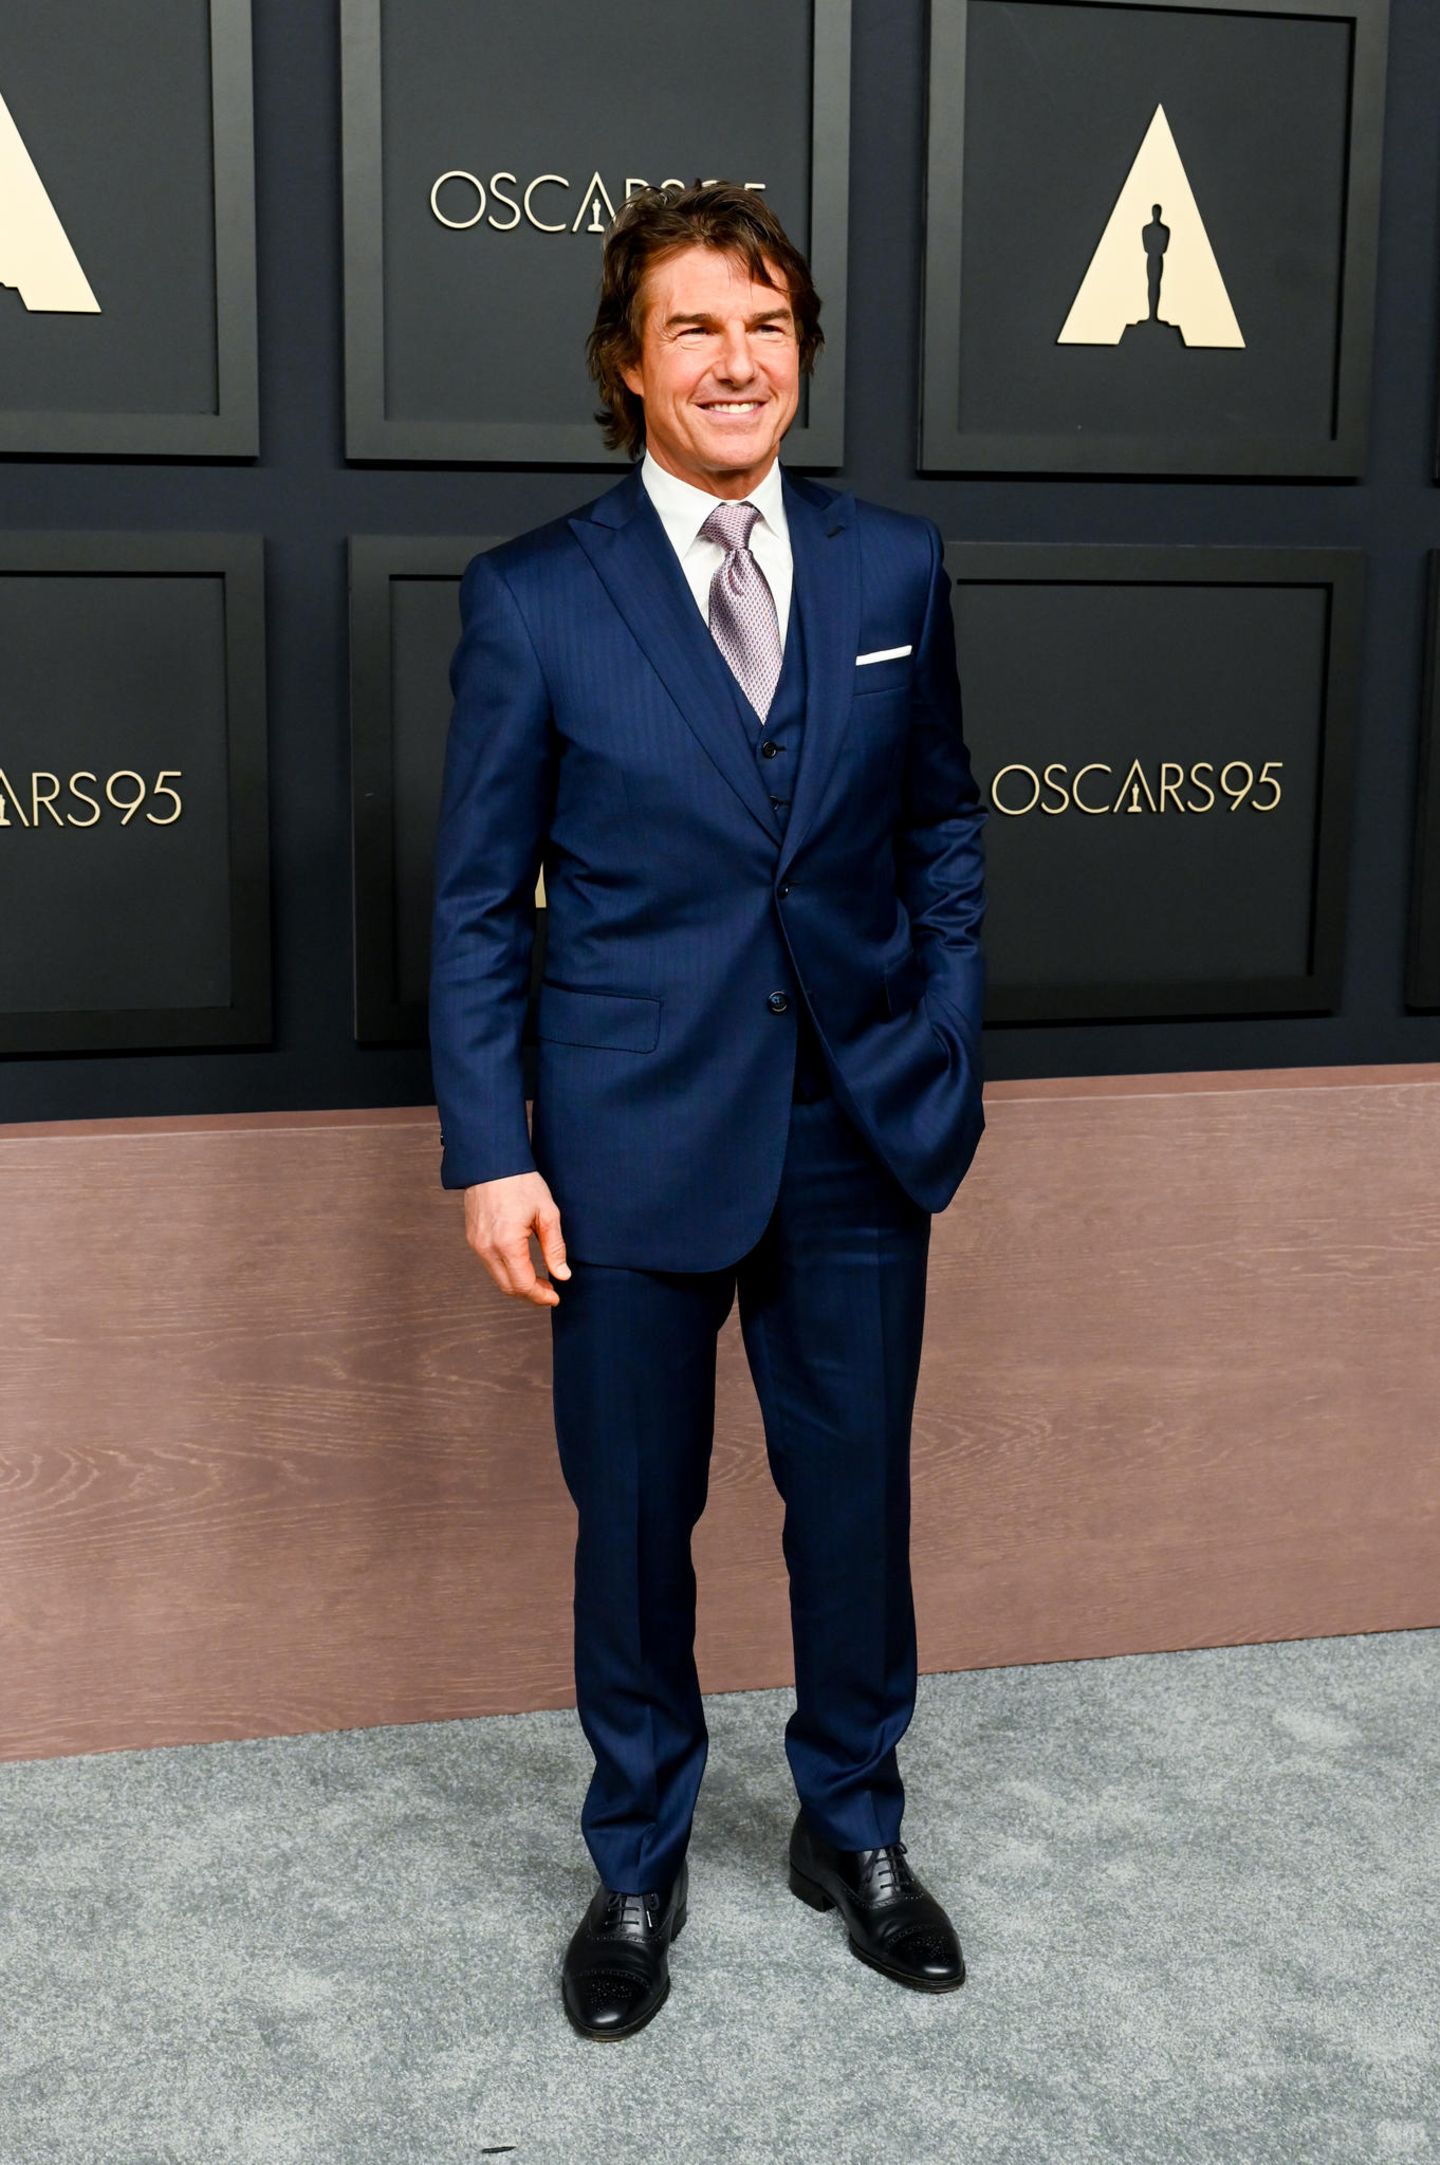 Tom Cruise - 3 Nominierungen  Die 90er Jahre waren Tom Cruises Jahrzent. Zwischen 1990 und 2000 war der Schauspieler und Produzent drei Mal für den "Academy Award" nominiert. Seit 15 Jahren lebt der Hollywoodstar nun schon ohne Oscar und weitere Nominierungen.